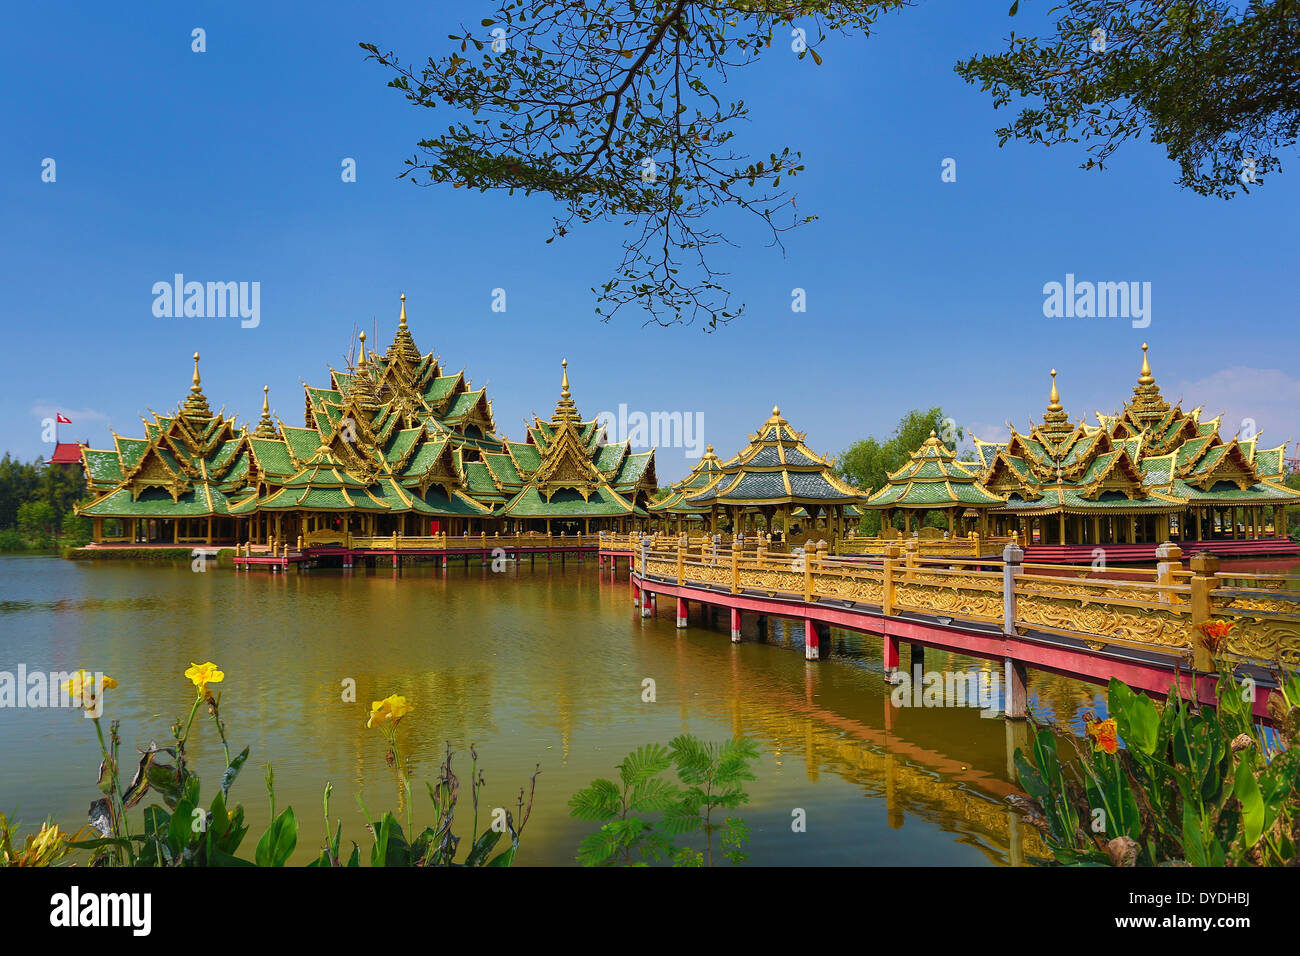 Thailand Asien Bangkok Ancient Siam Park Architektur Brücke bunte Kultur erleuchtet grünen Park Pavillon Reflexion tou Stockfoto